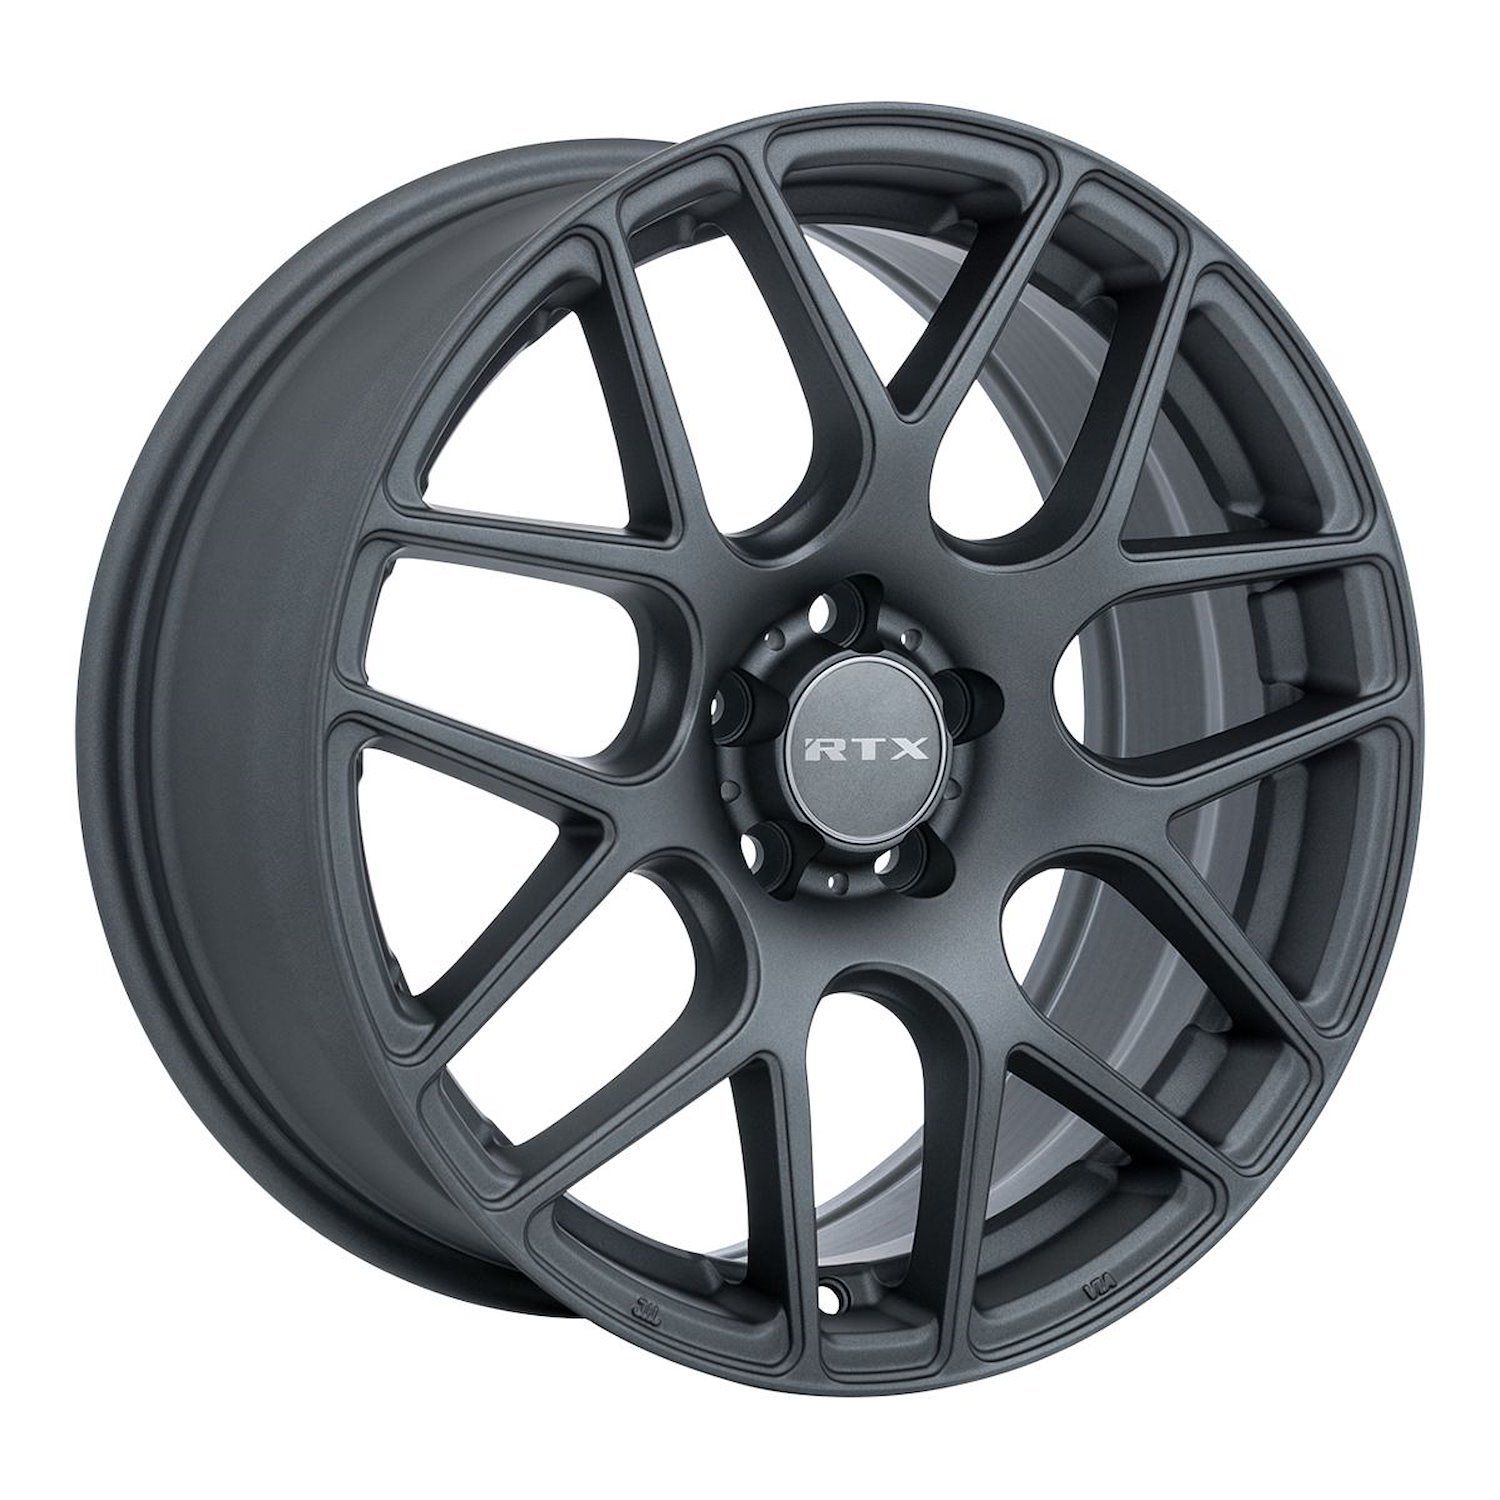 082785 RTX-Series Envy Wheel [Size: 16" x 6.50"] Matte Gunmetal Finish